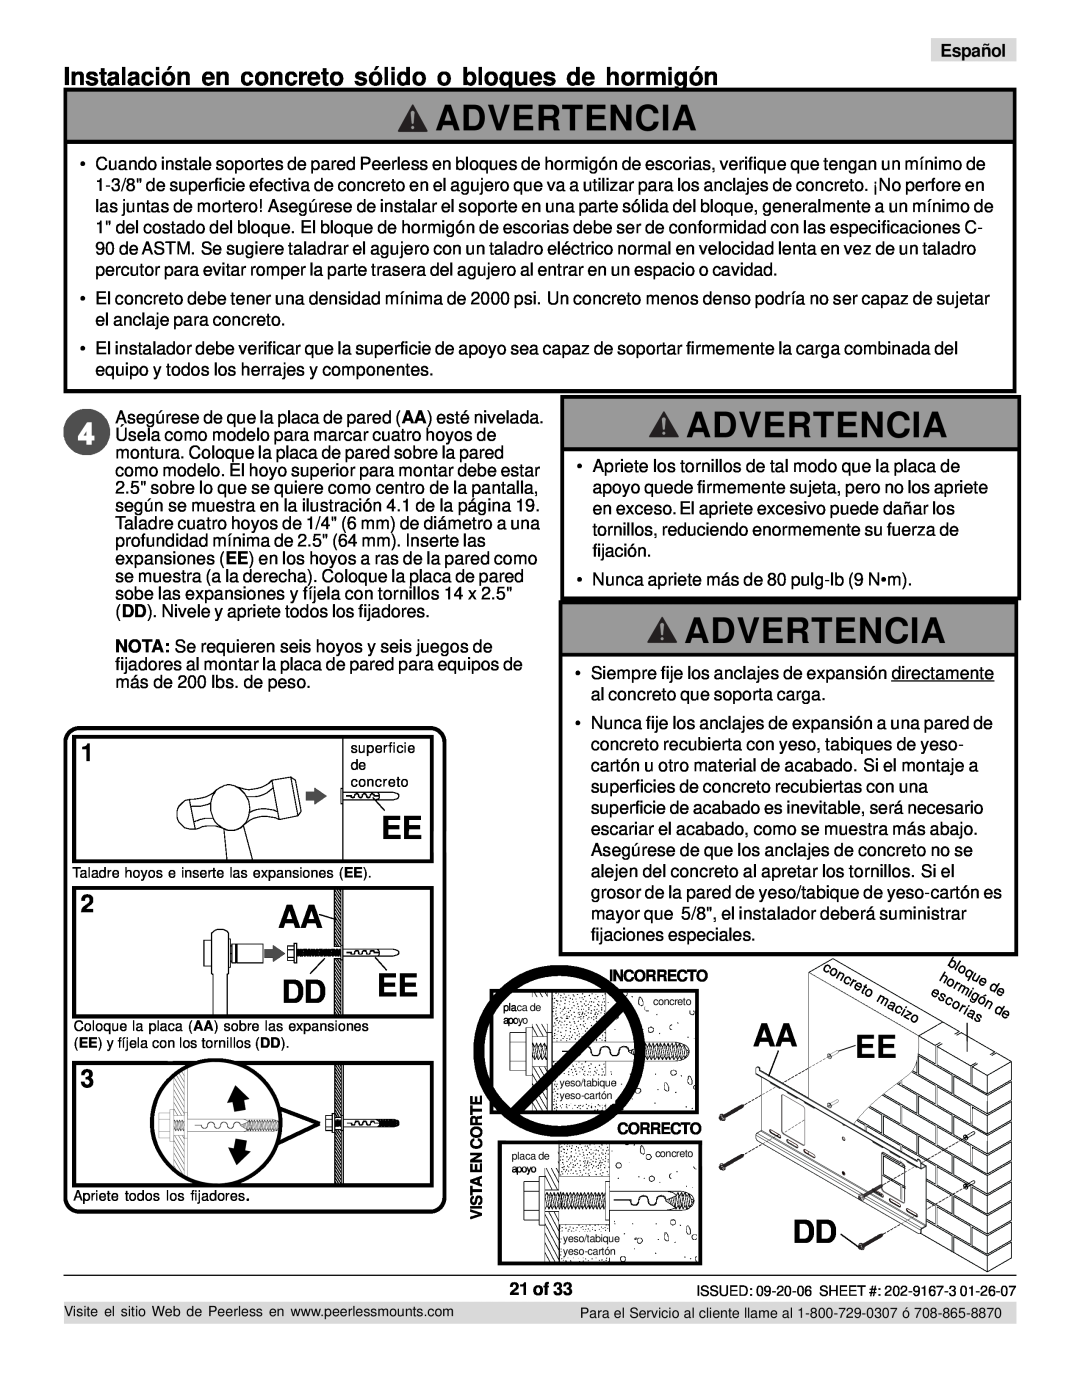 Peerless Industries ONE-TP-S, RTONES manual Advertencia, hormigón, Español, 21 of 